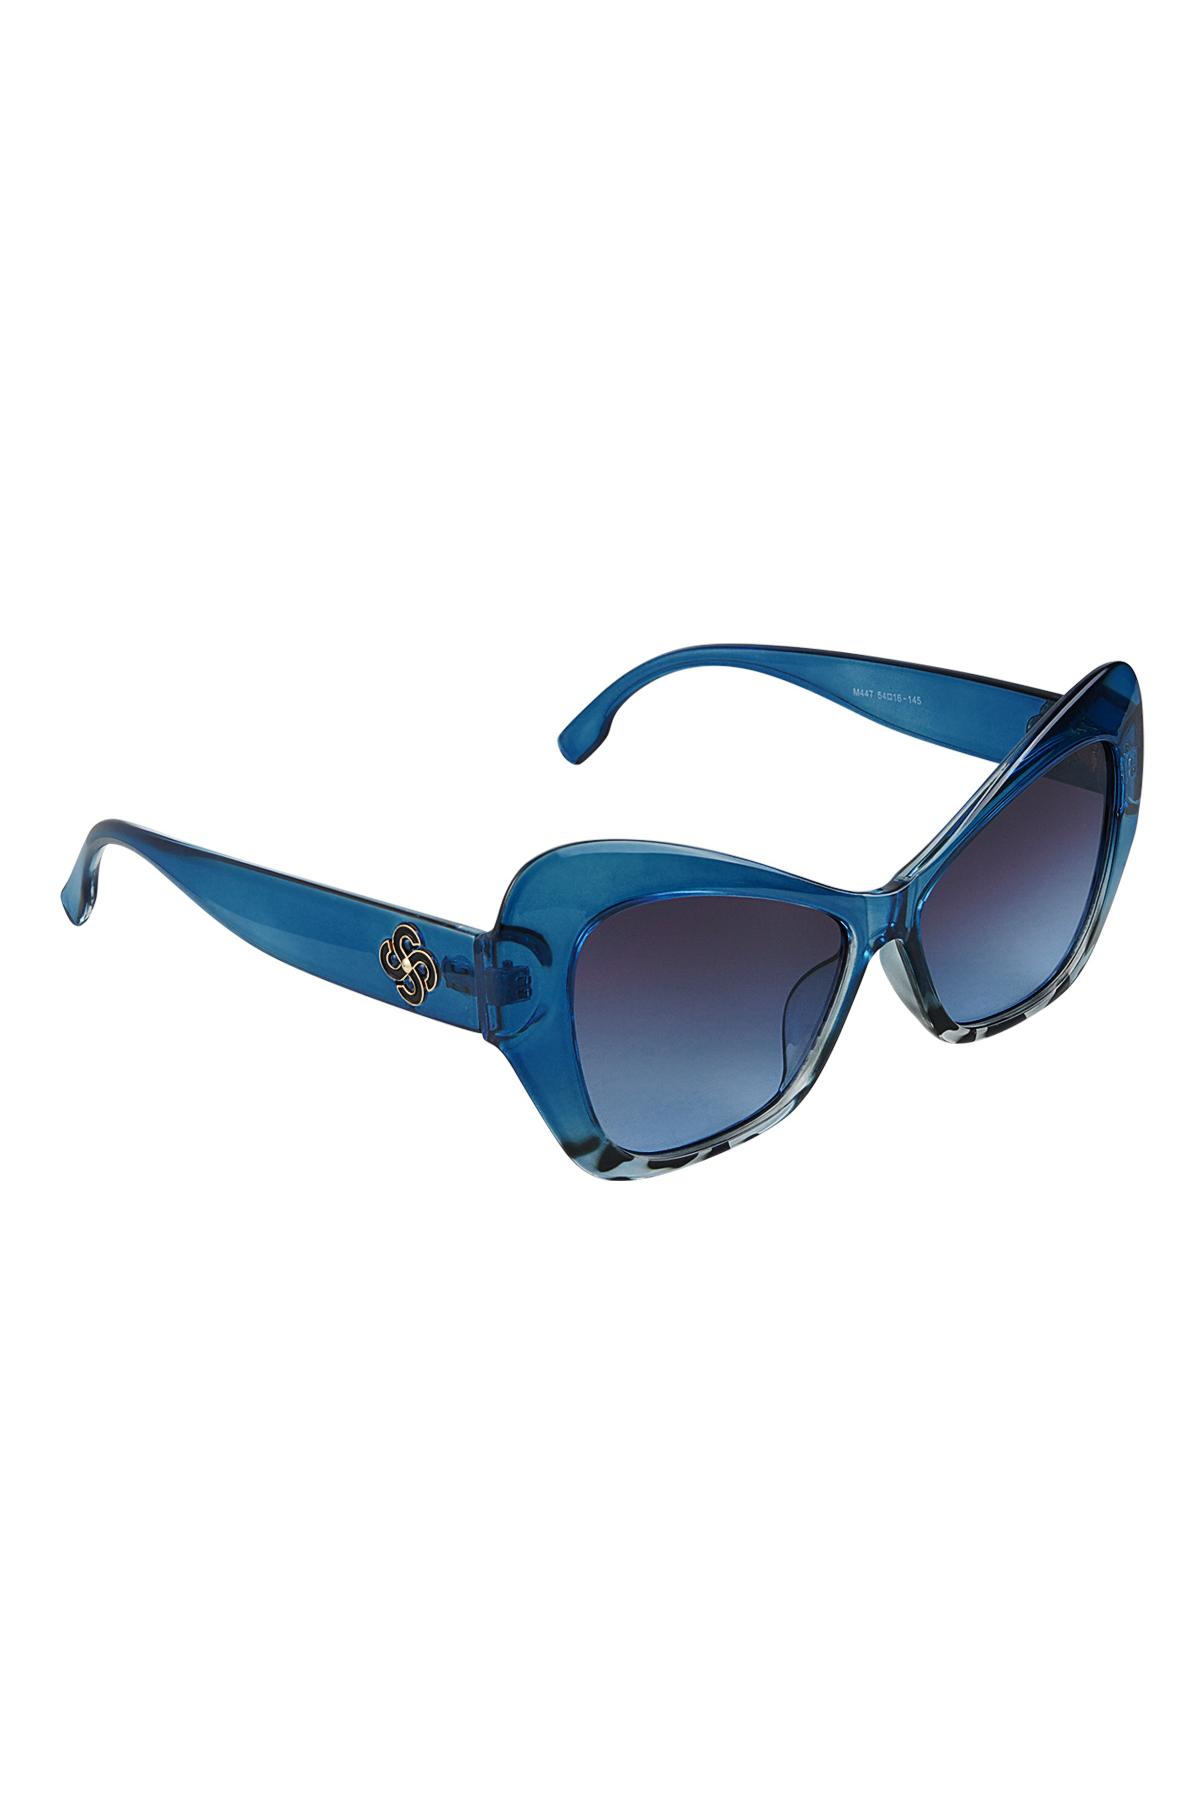 Dichiarazione sugli occhiali da sole Blue PC One size h5 